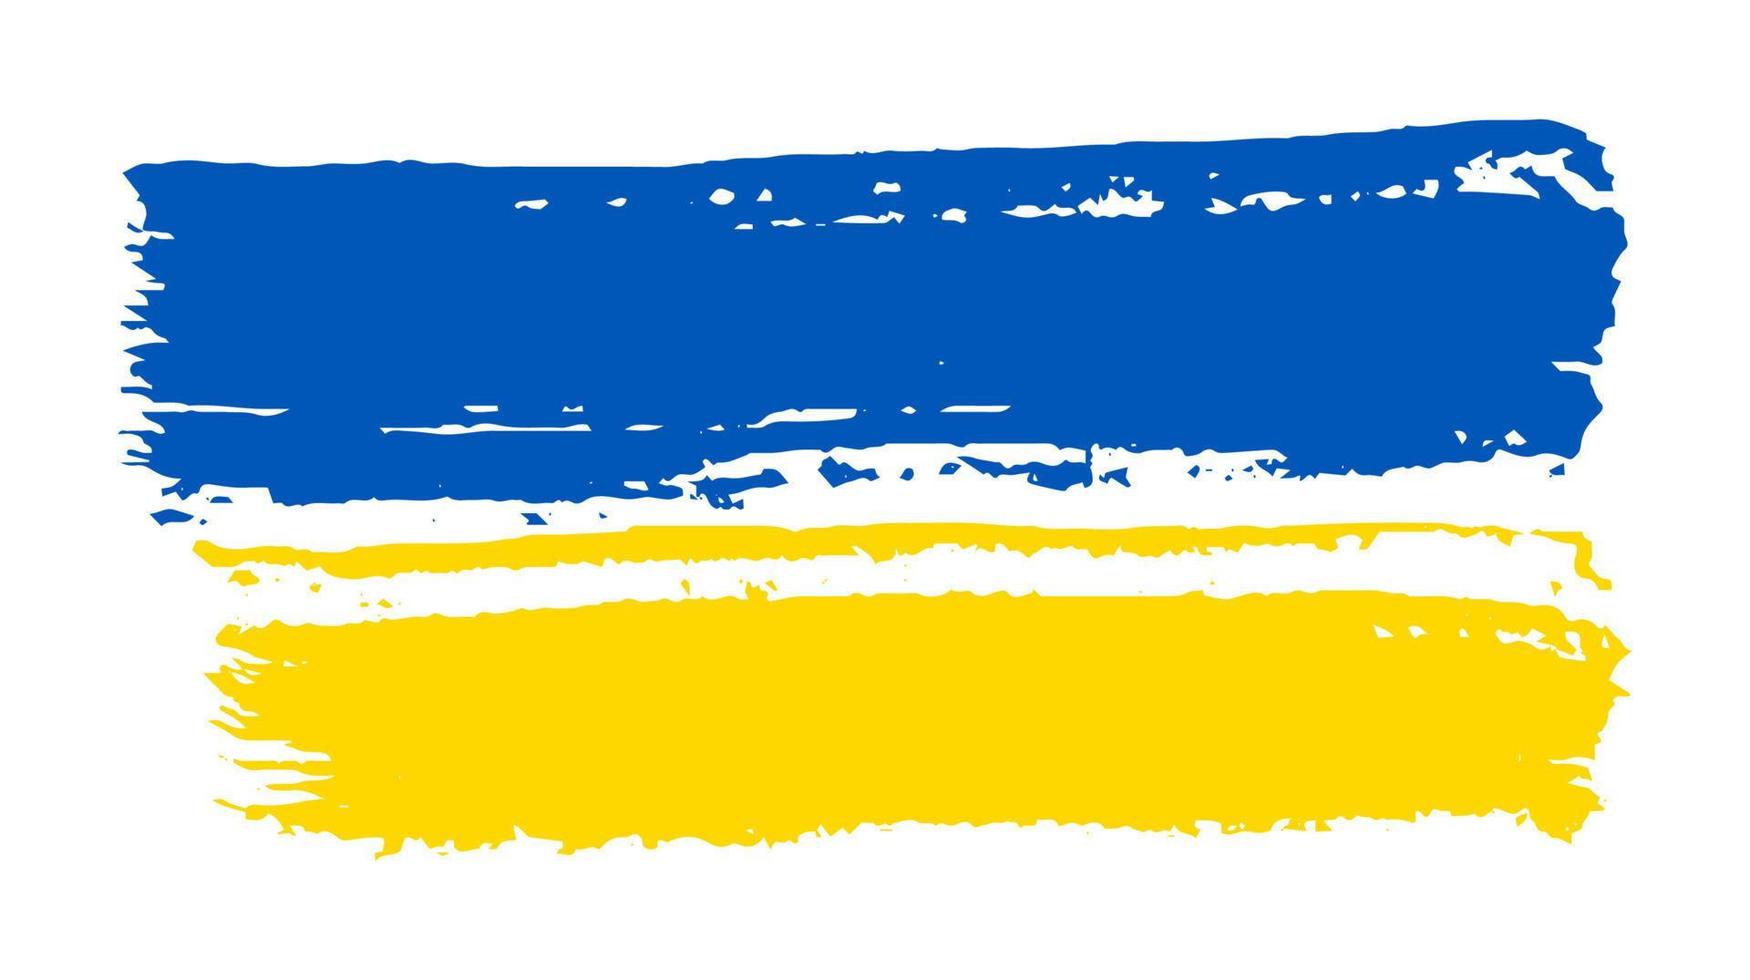 drapeau national ukrainien dans le style grunge. peint avec un drapeau de coup de pinceau de l'ukraine. illustration vectorielle vecteur